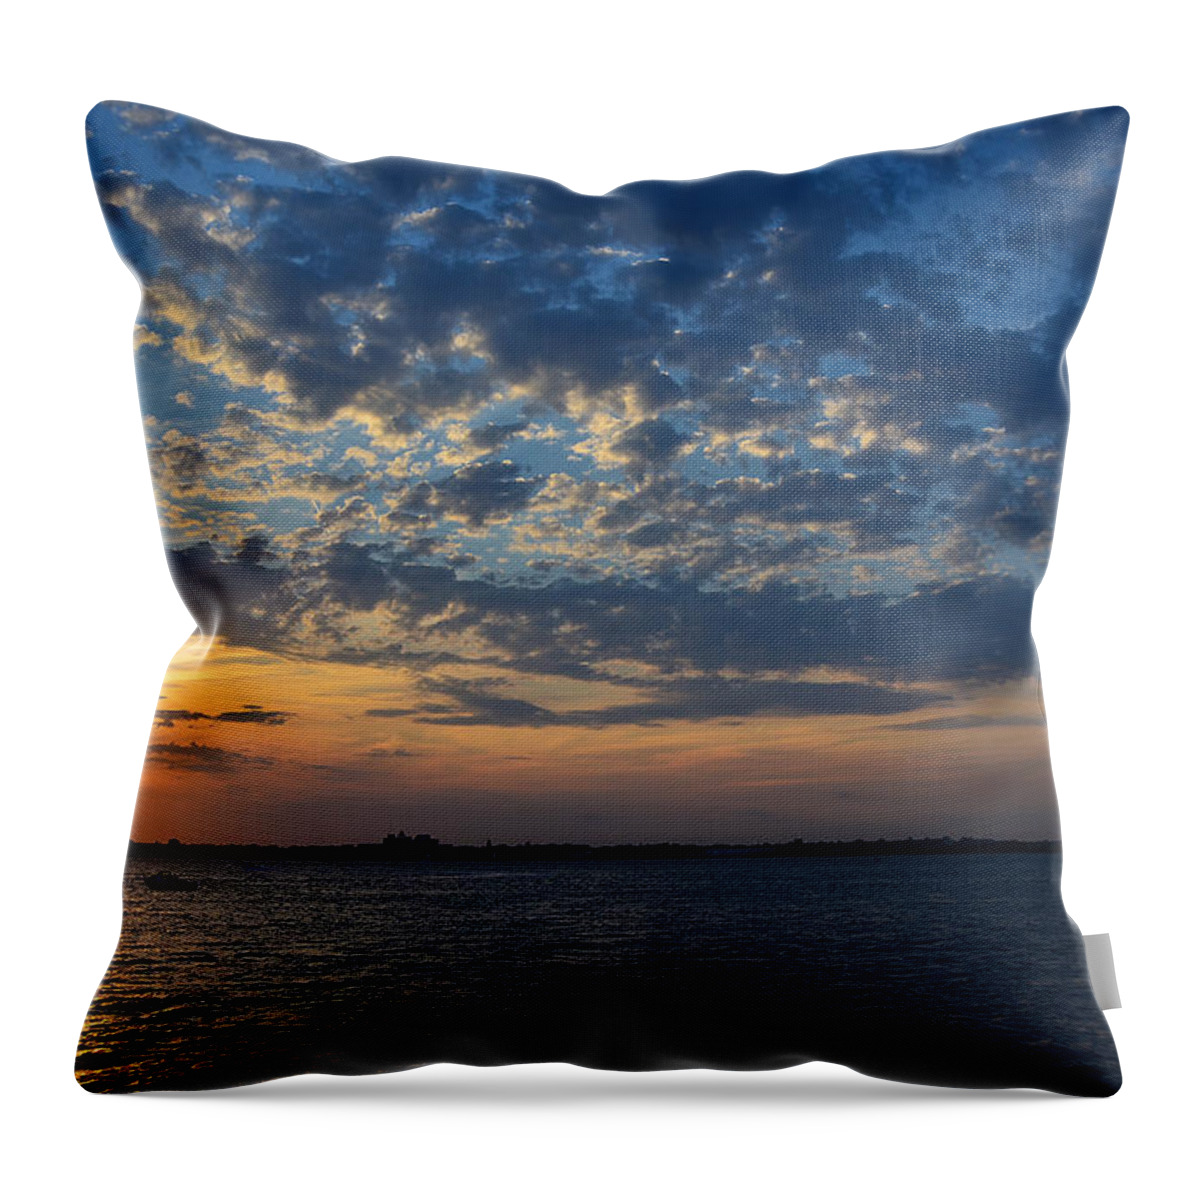 Rockaway Point Throw Pillow featuring the photograph Sunset Rockaway Point Pier by Maureen E Ritter